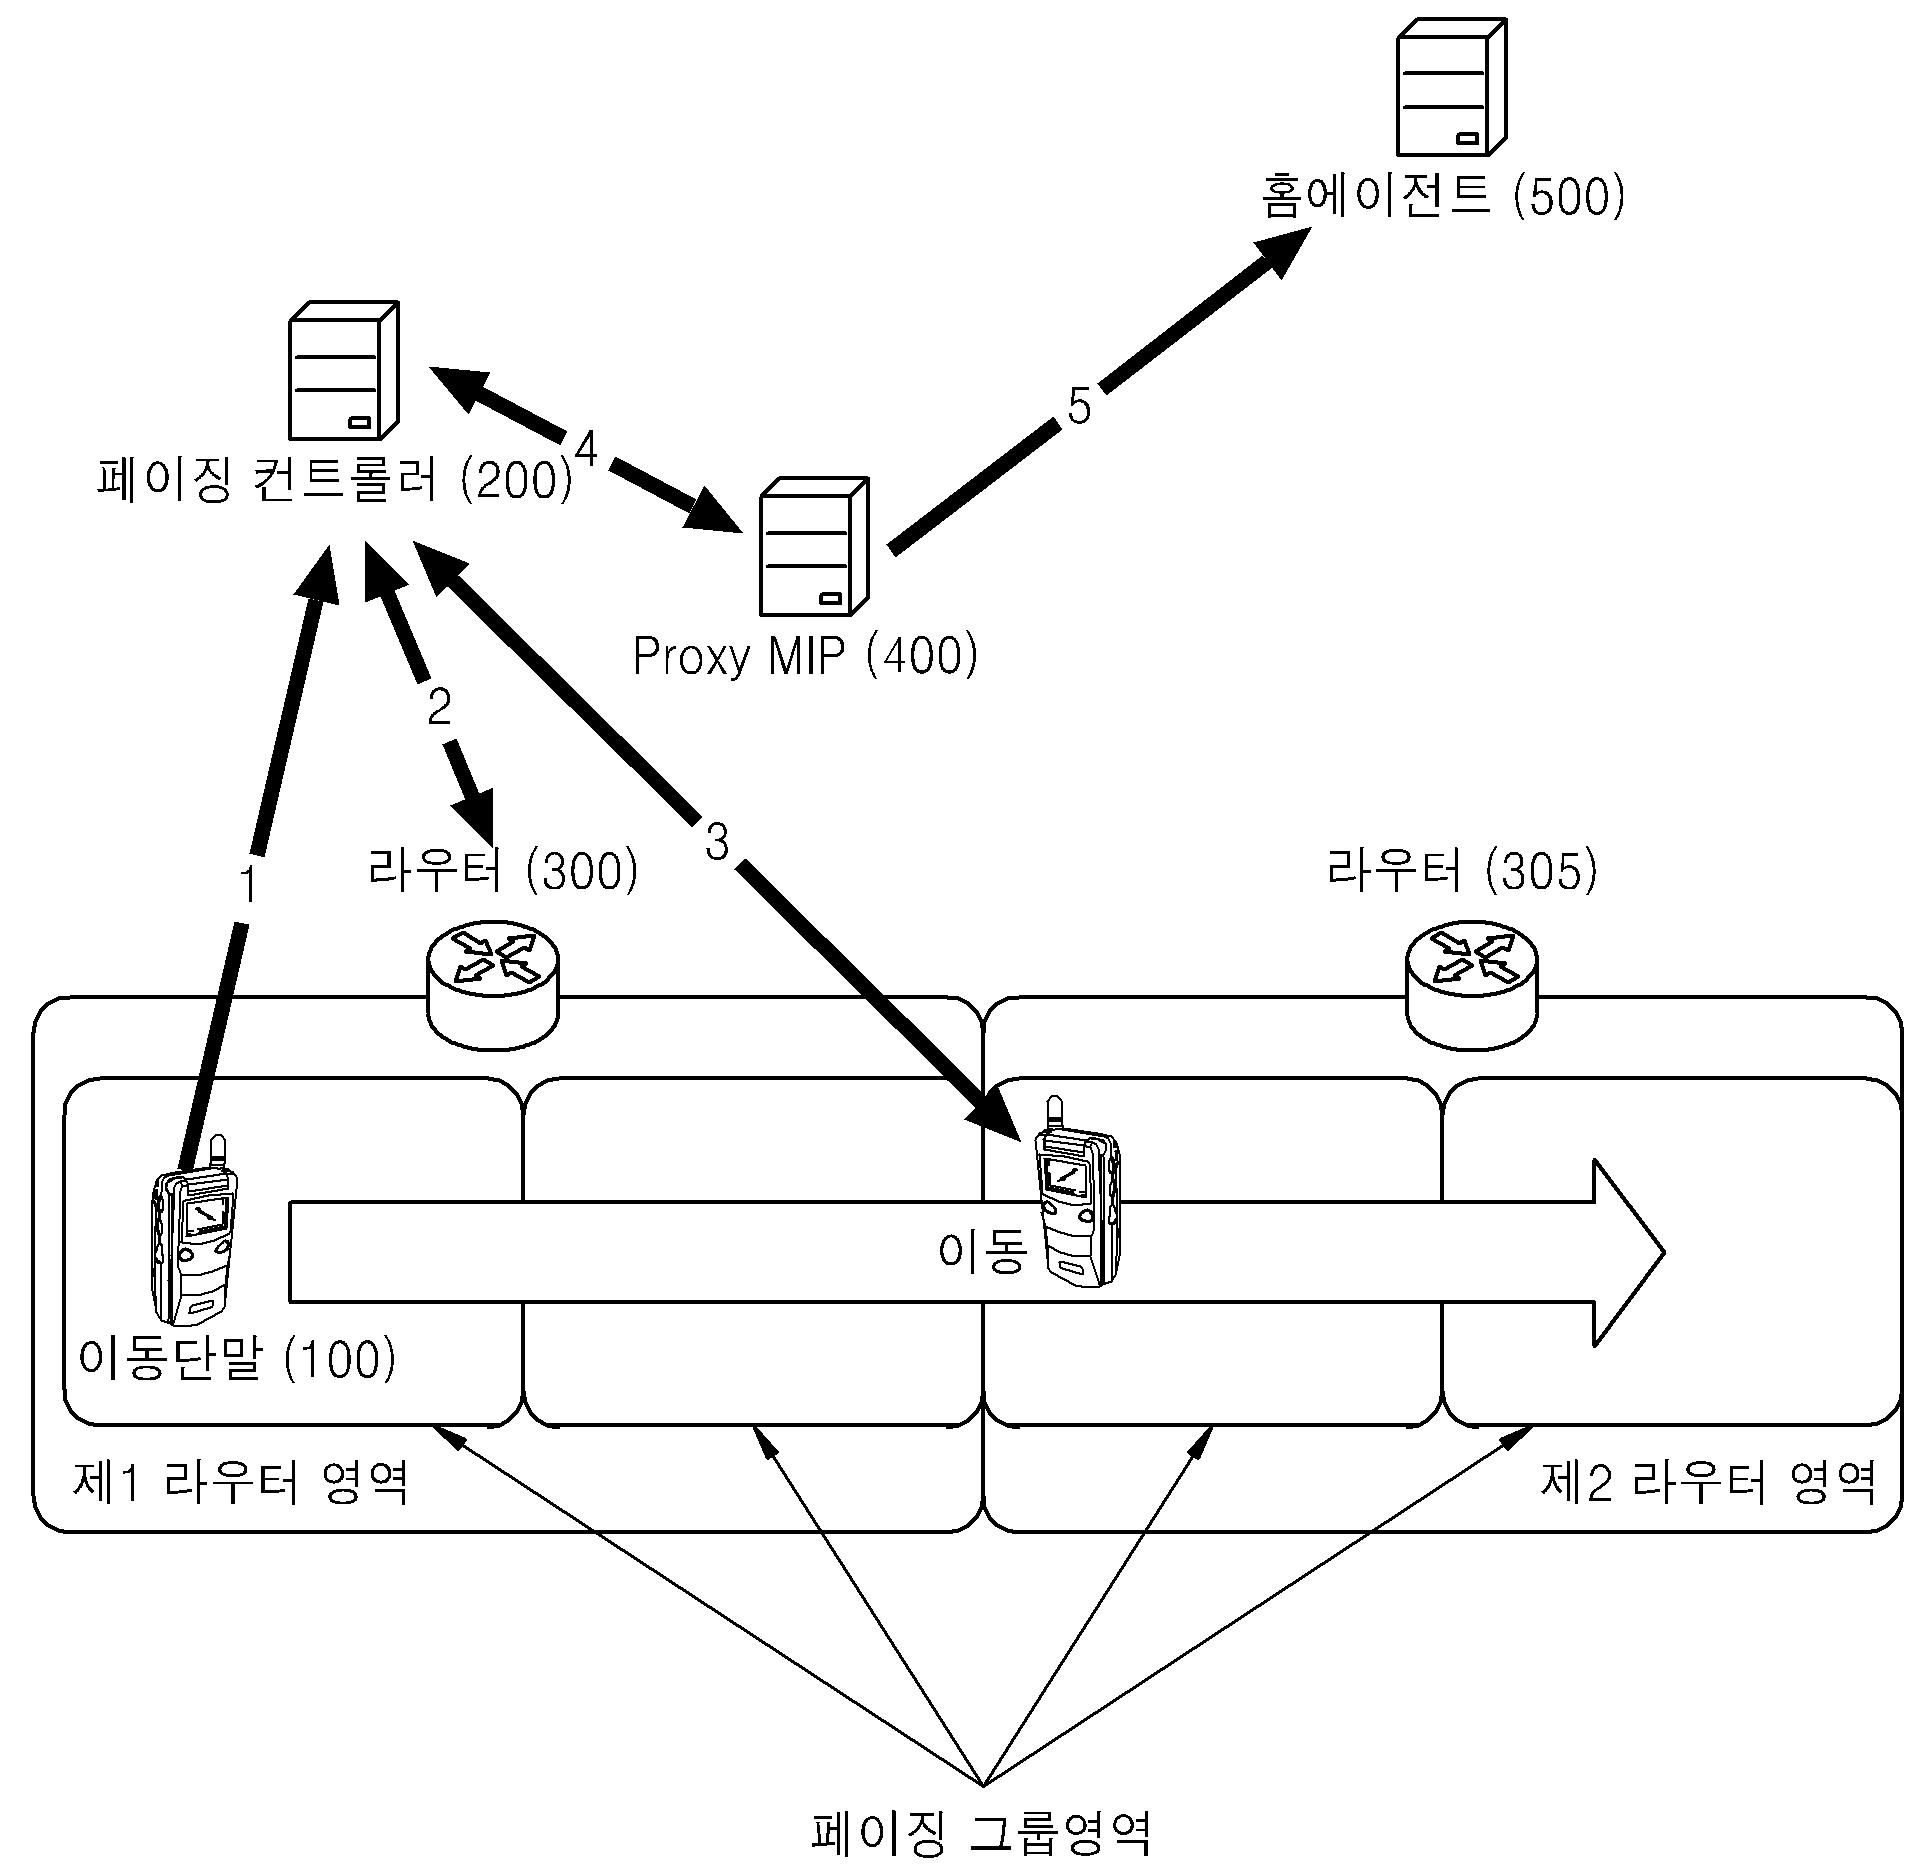 OFDM 셀룰러 시스템에서의 셀 탐색 방법, 순방향 링크 프레임 전송 방법 및 이를 이용하는 장치 및 순방향 링크 프레임 구조